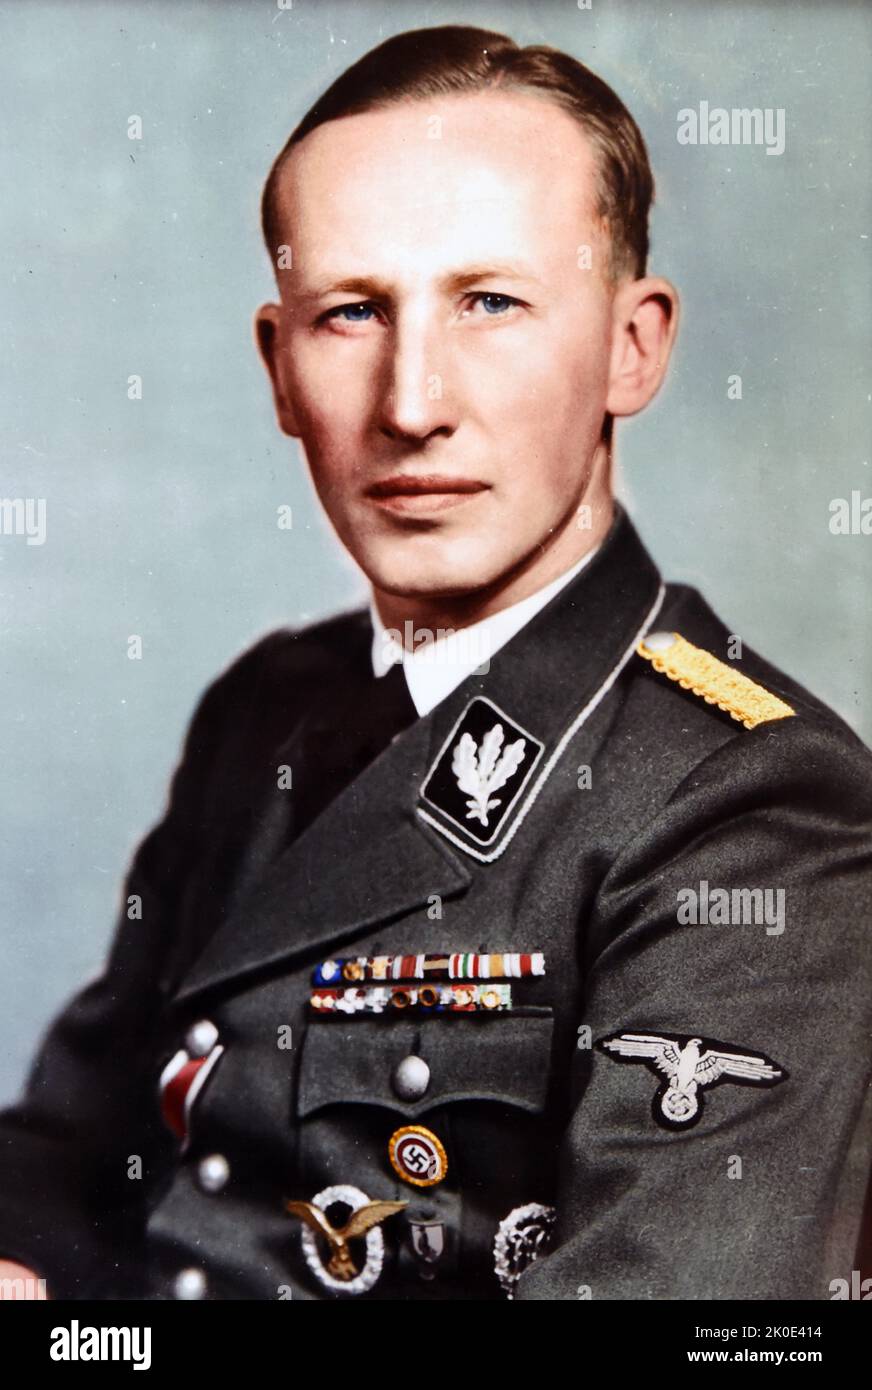 Reinhard Heydrich (1904 - 1942) hochrangiger deutscher SS- und Polizeibeamter während der NS-Zeit und Hauptarchitekt des Holocaust. Er war Leiter des Reichssicherheitshauptamtes. Vorsitzender der Wannsee-Konferenz im Januar 1942, die die Pläne für die „Endlösung der jüdischen Frage“ zur Deportation und zum Völkermord aller Juden im deutsch besetzten Europa formalisierte. Stockfoto